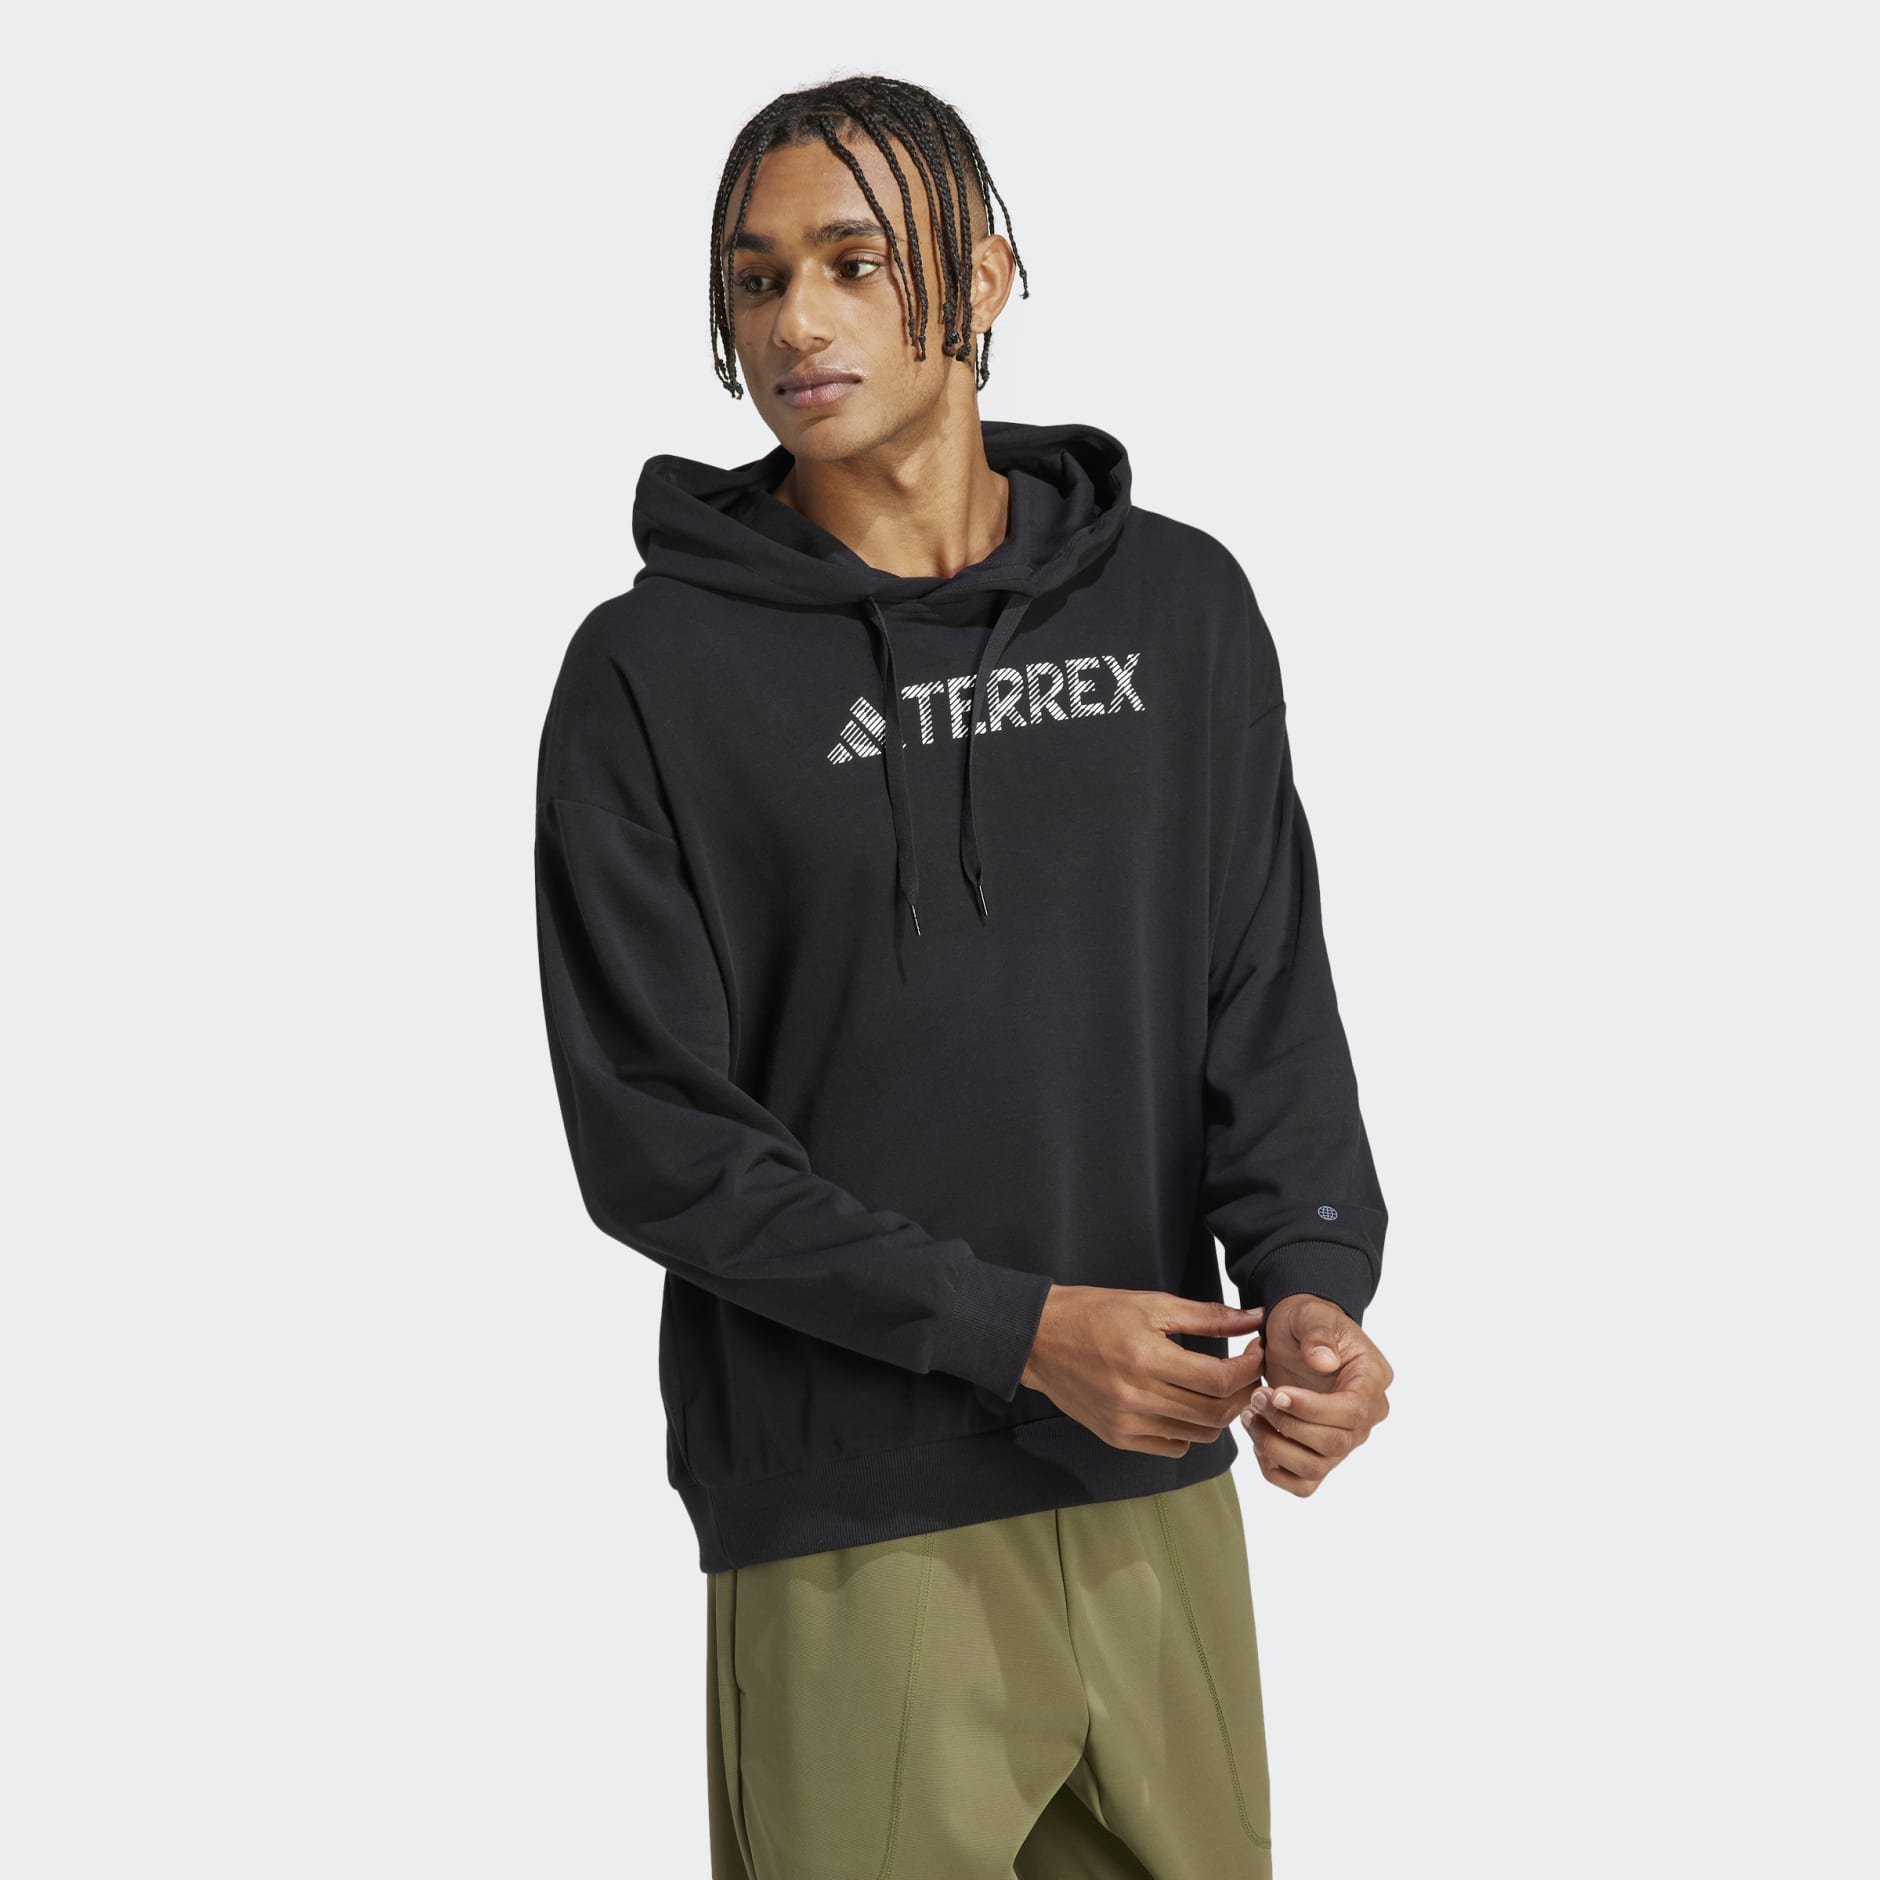 Clothing - Terrex Large Logo Hoodie (Gender Neutral) - Black | adidas ...